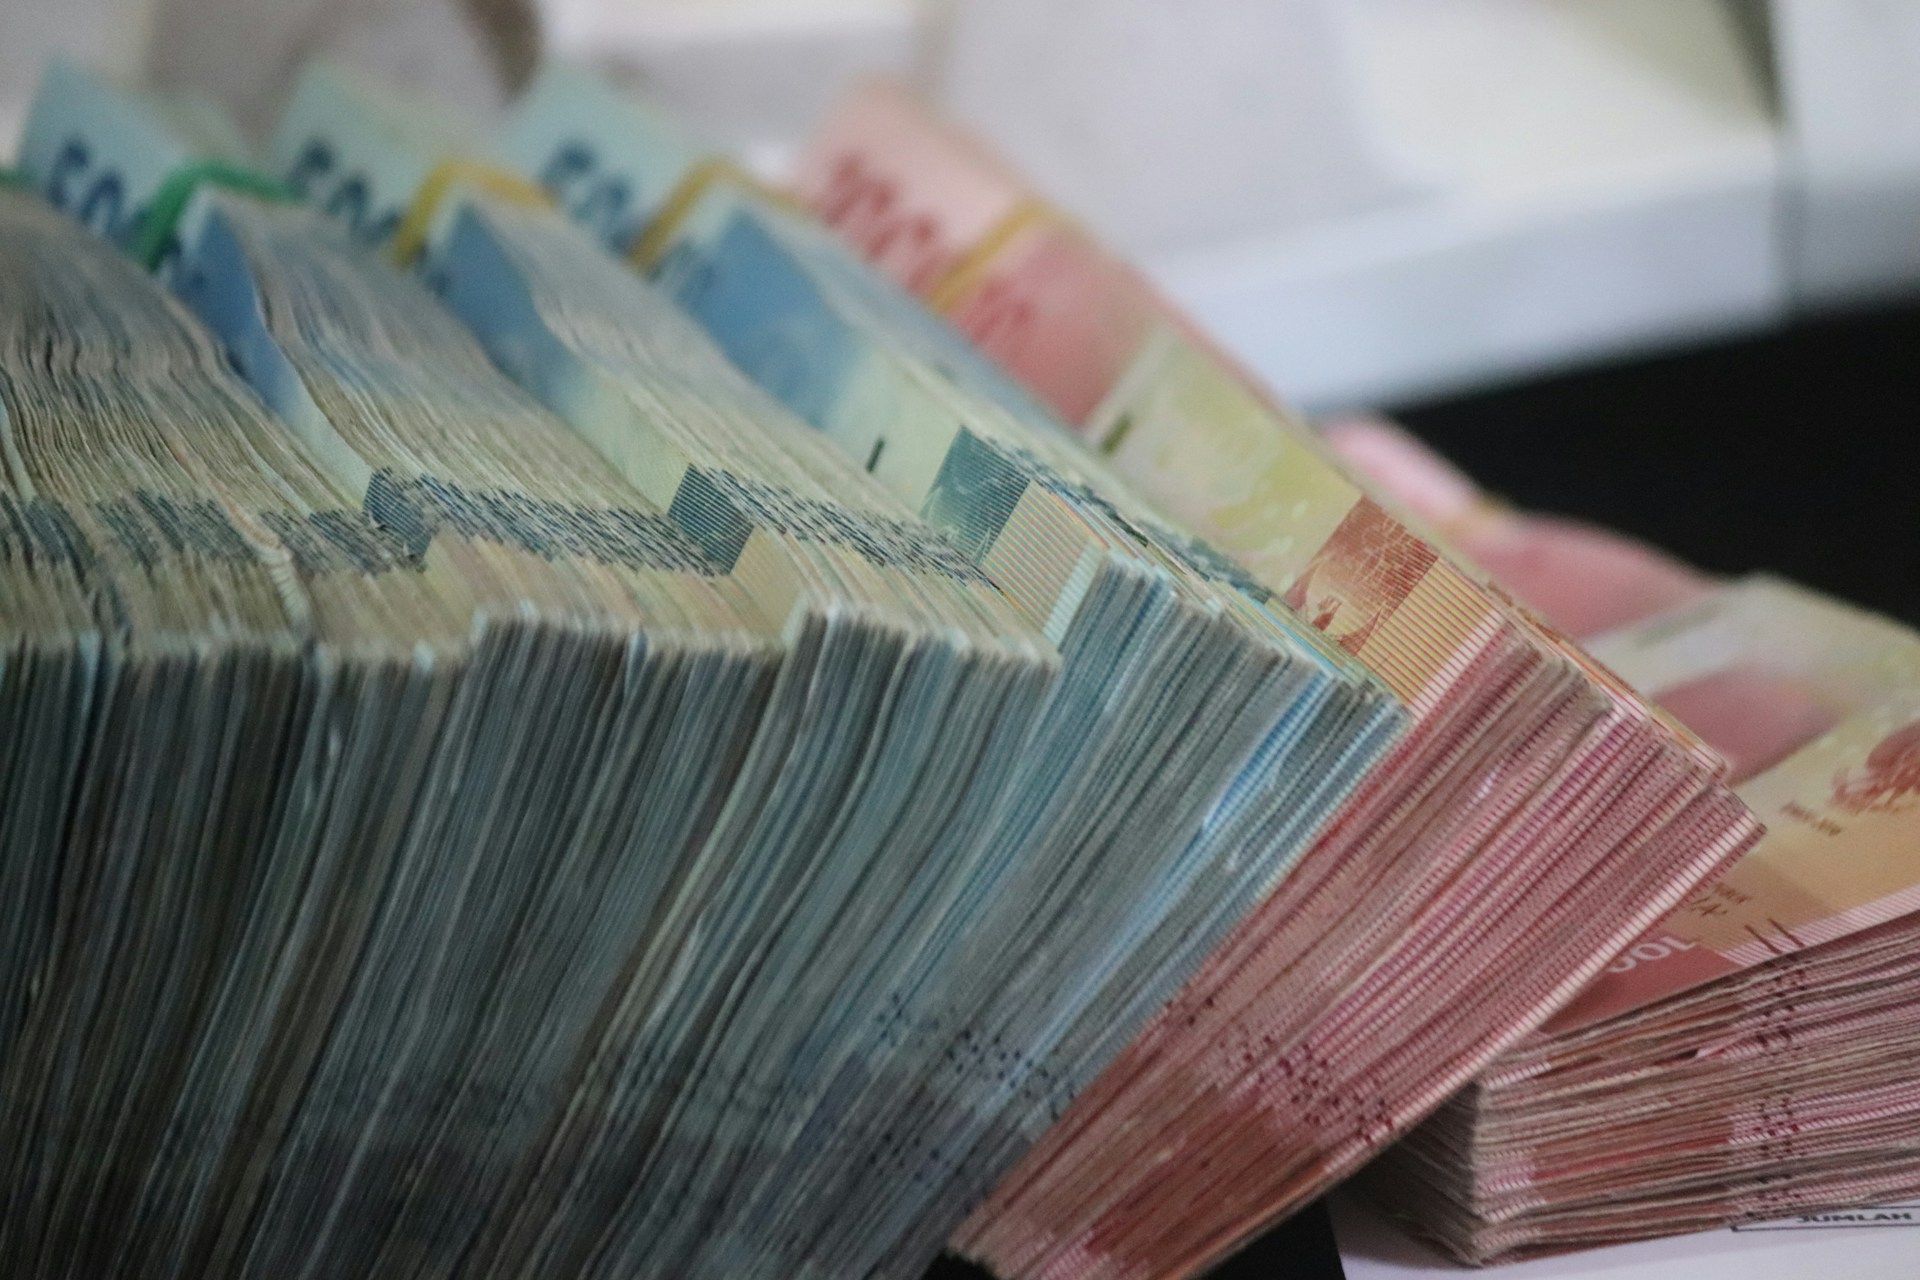 Jadwal dan lokasi penukaran uang baru Lebaran untuk wilayah Jakarta 